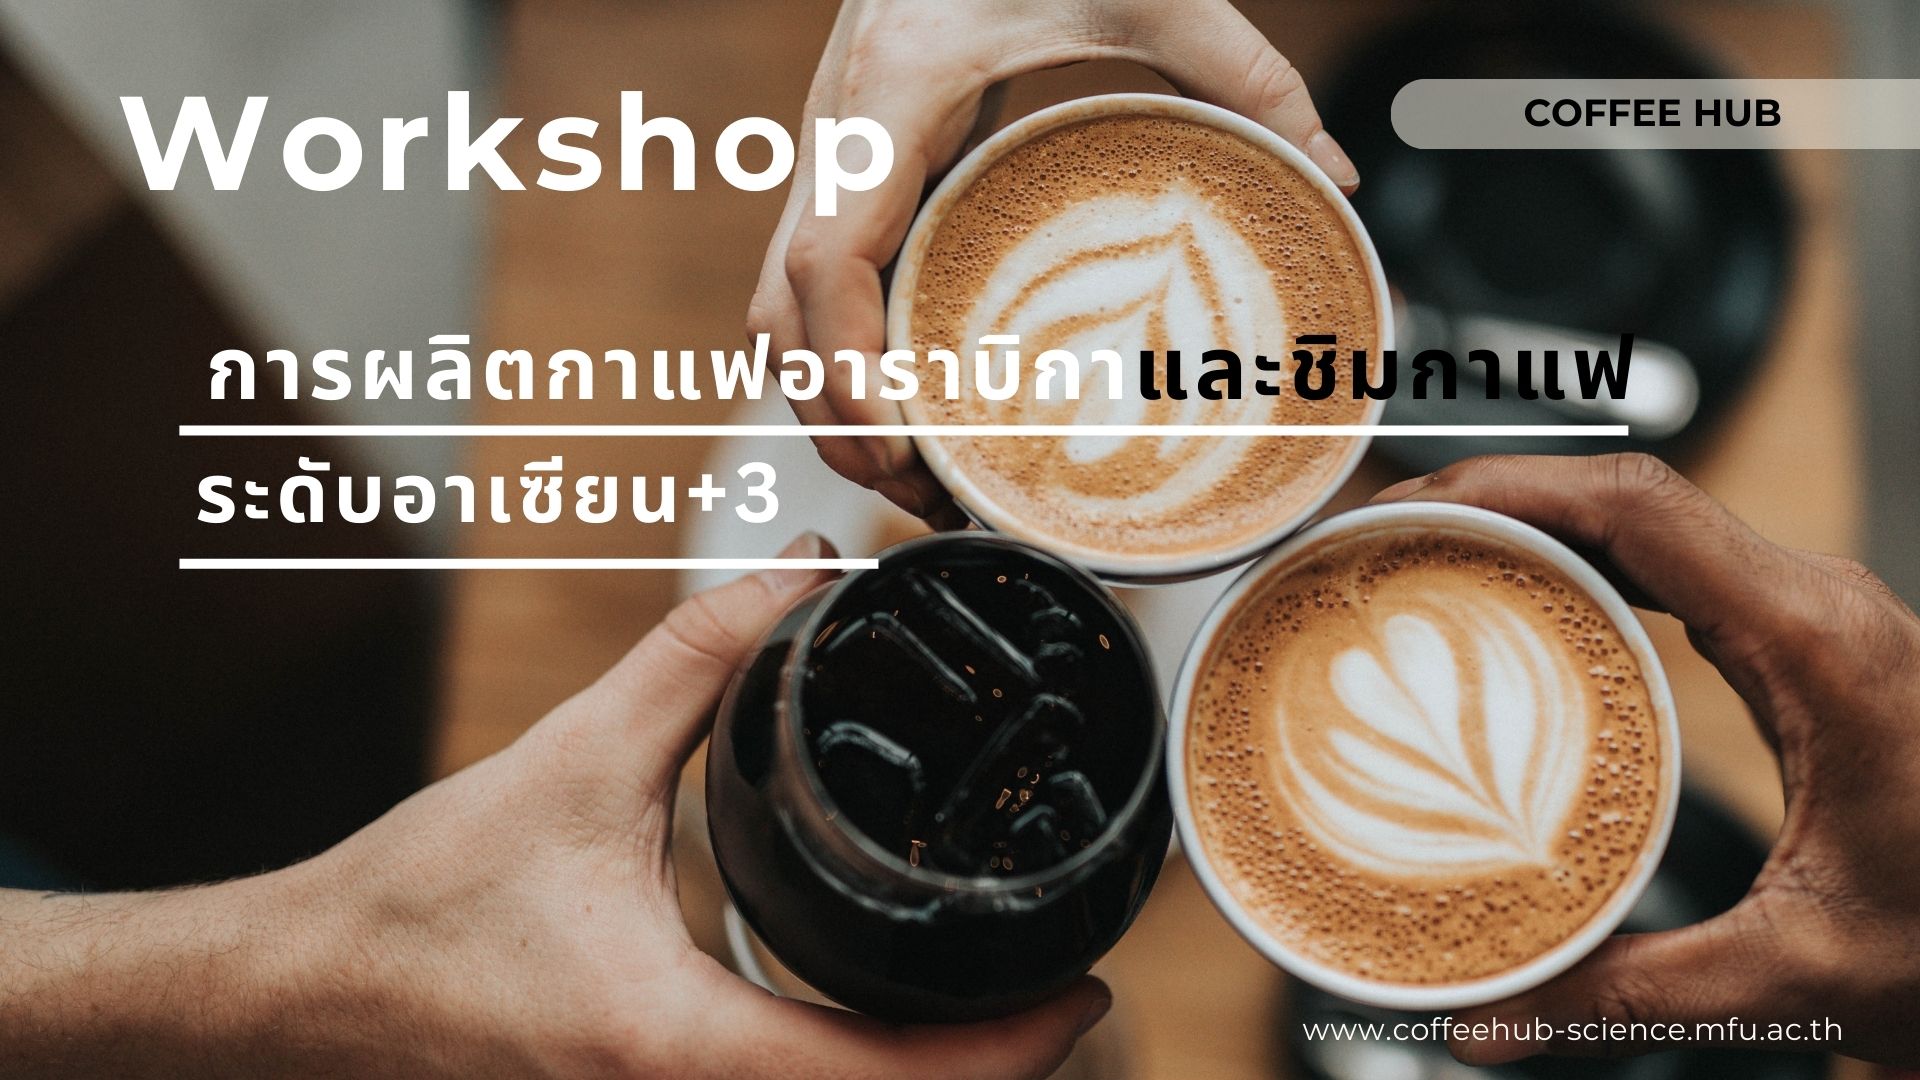 Workshop การผลิตกาแฟอาราบิกาและชิมกาแฟระดับอาเซียน +3